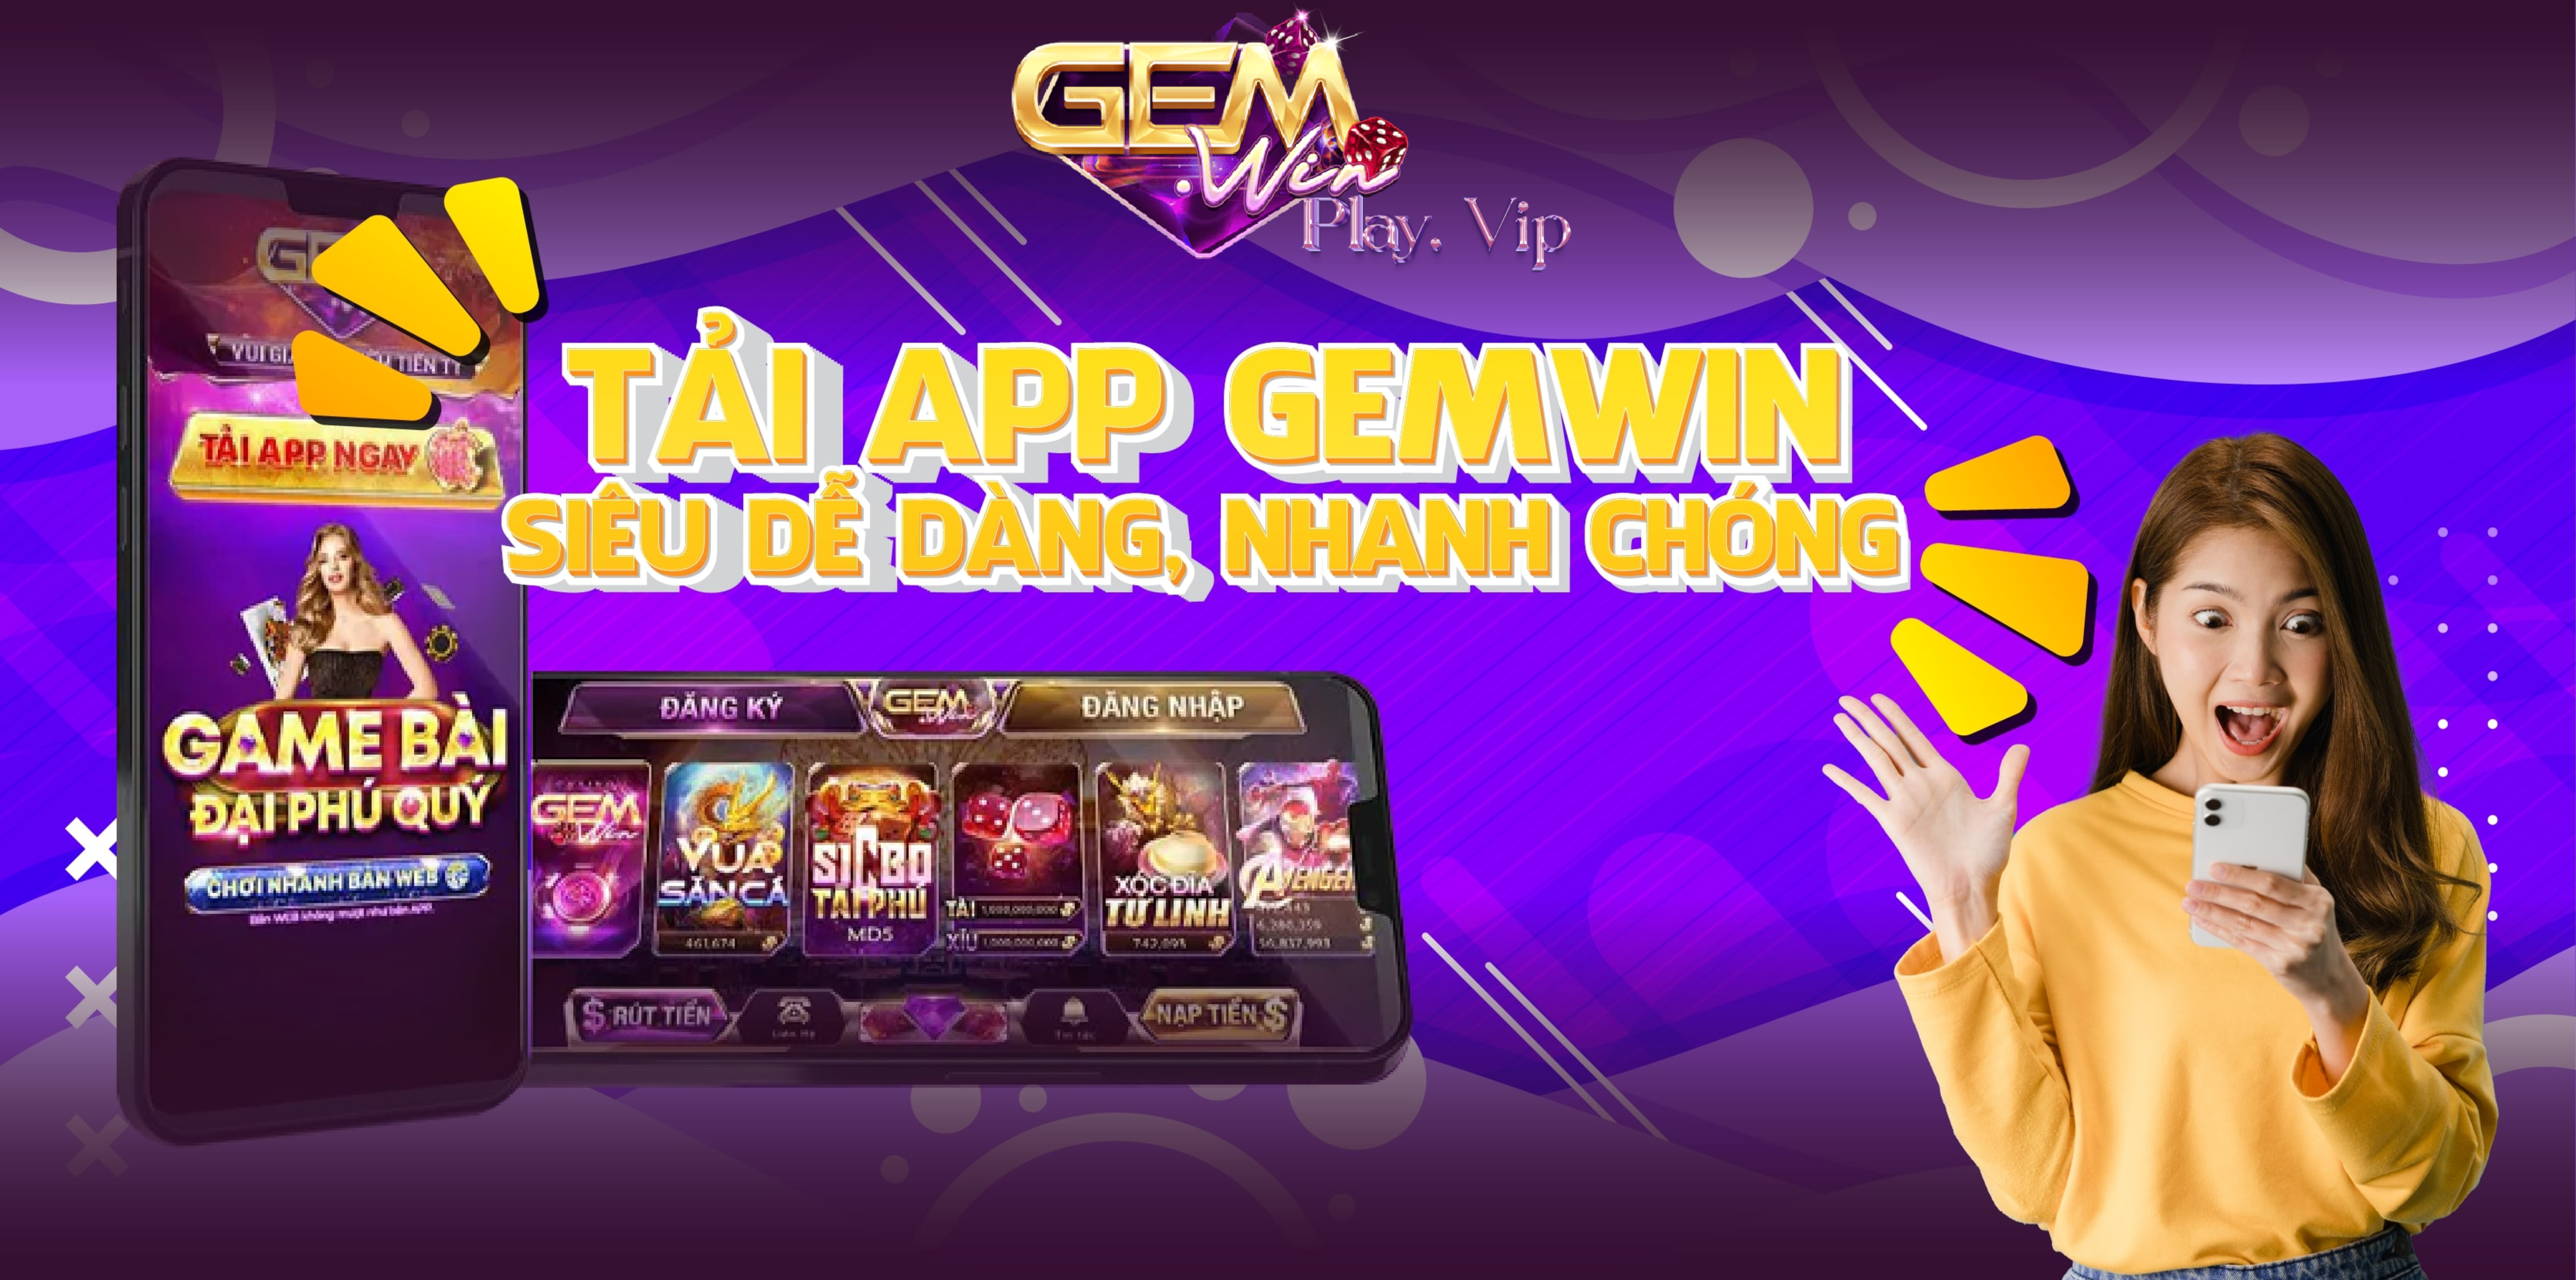 Tải app Gemwin siêu đơn giản - nhanh chóng